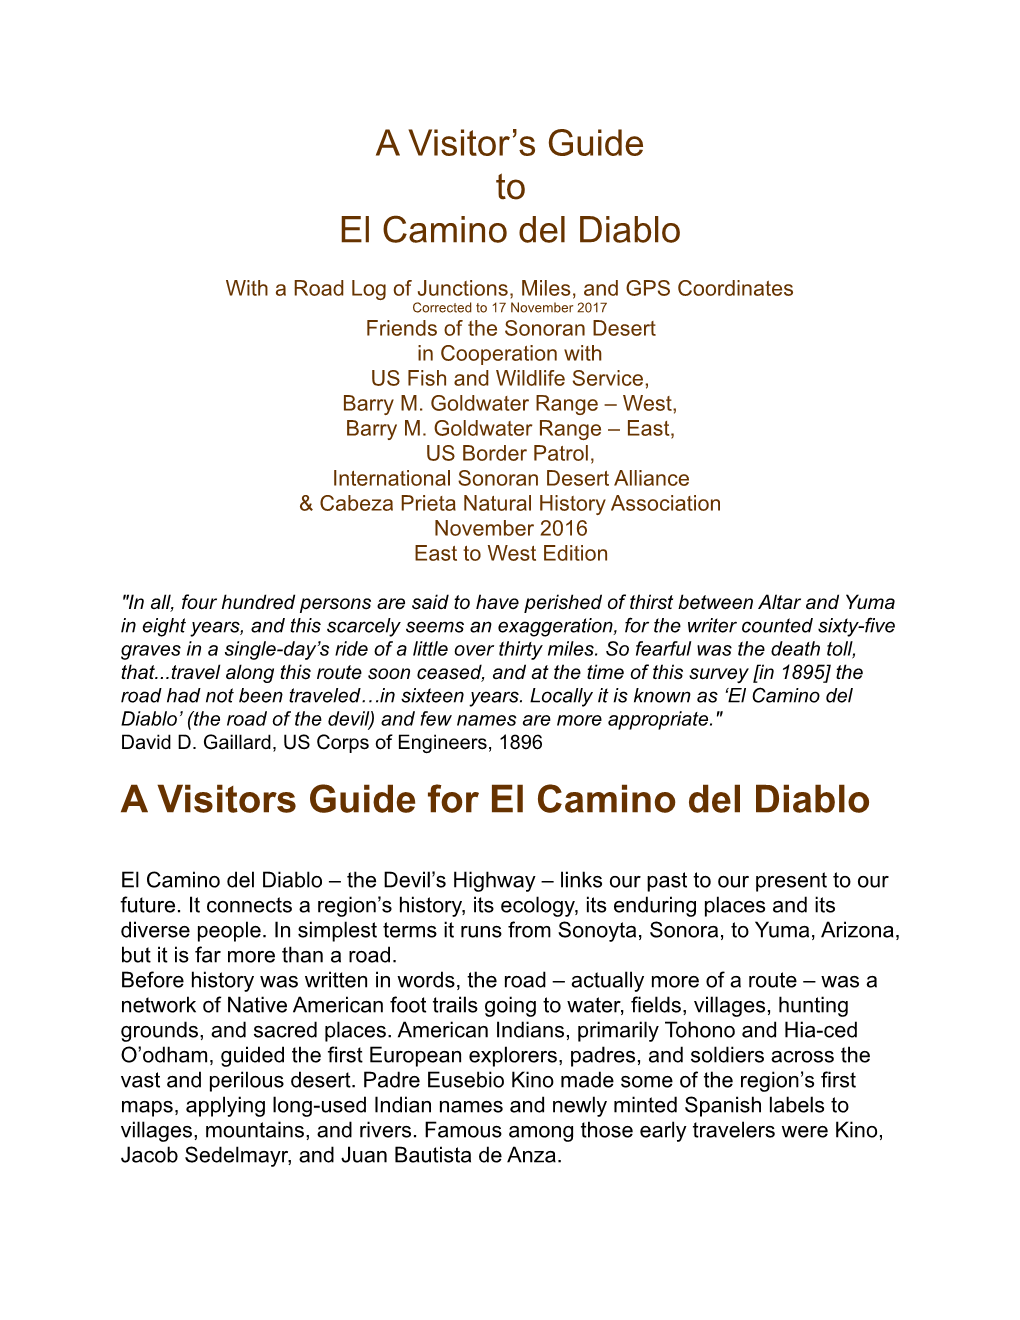 A Visitors Guide for El Camino Del Diablo